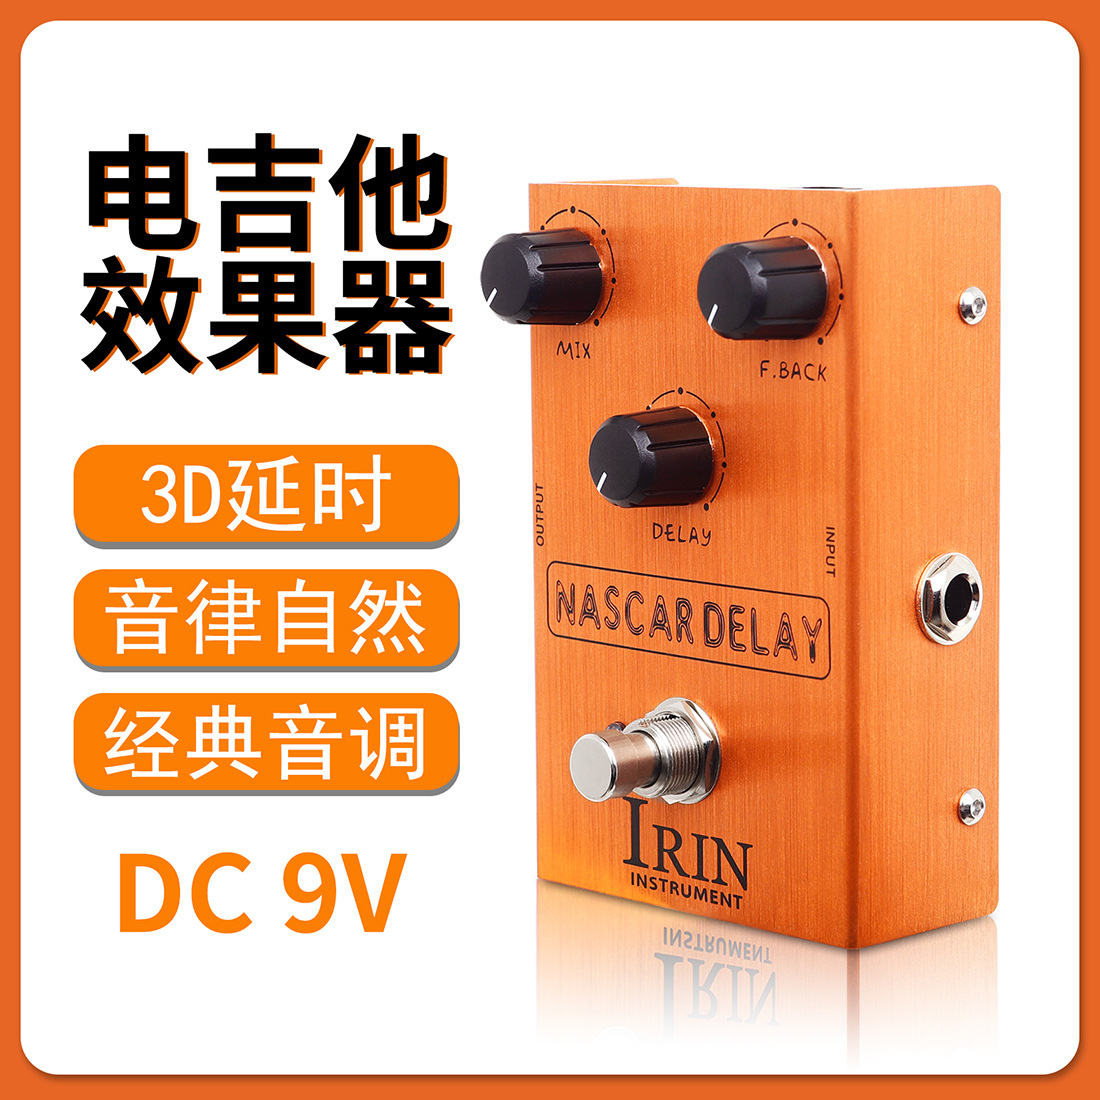 IRIN电吉他效果器踏板放大模拟器音箱音色模拟延迟单块效果器批发图